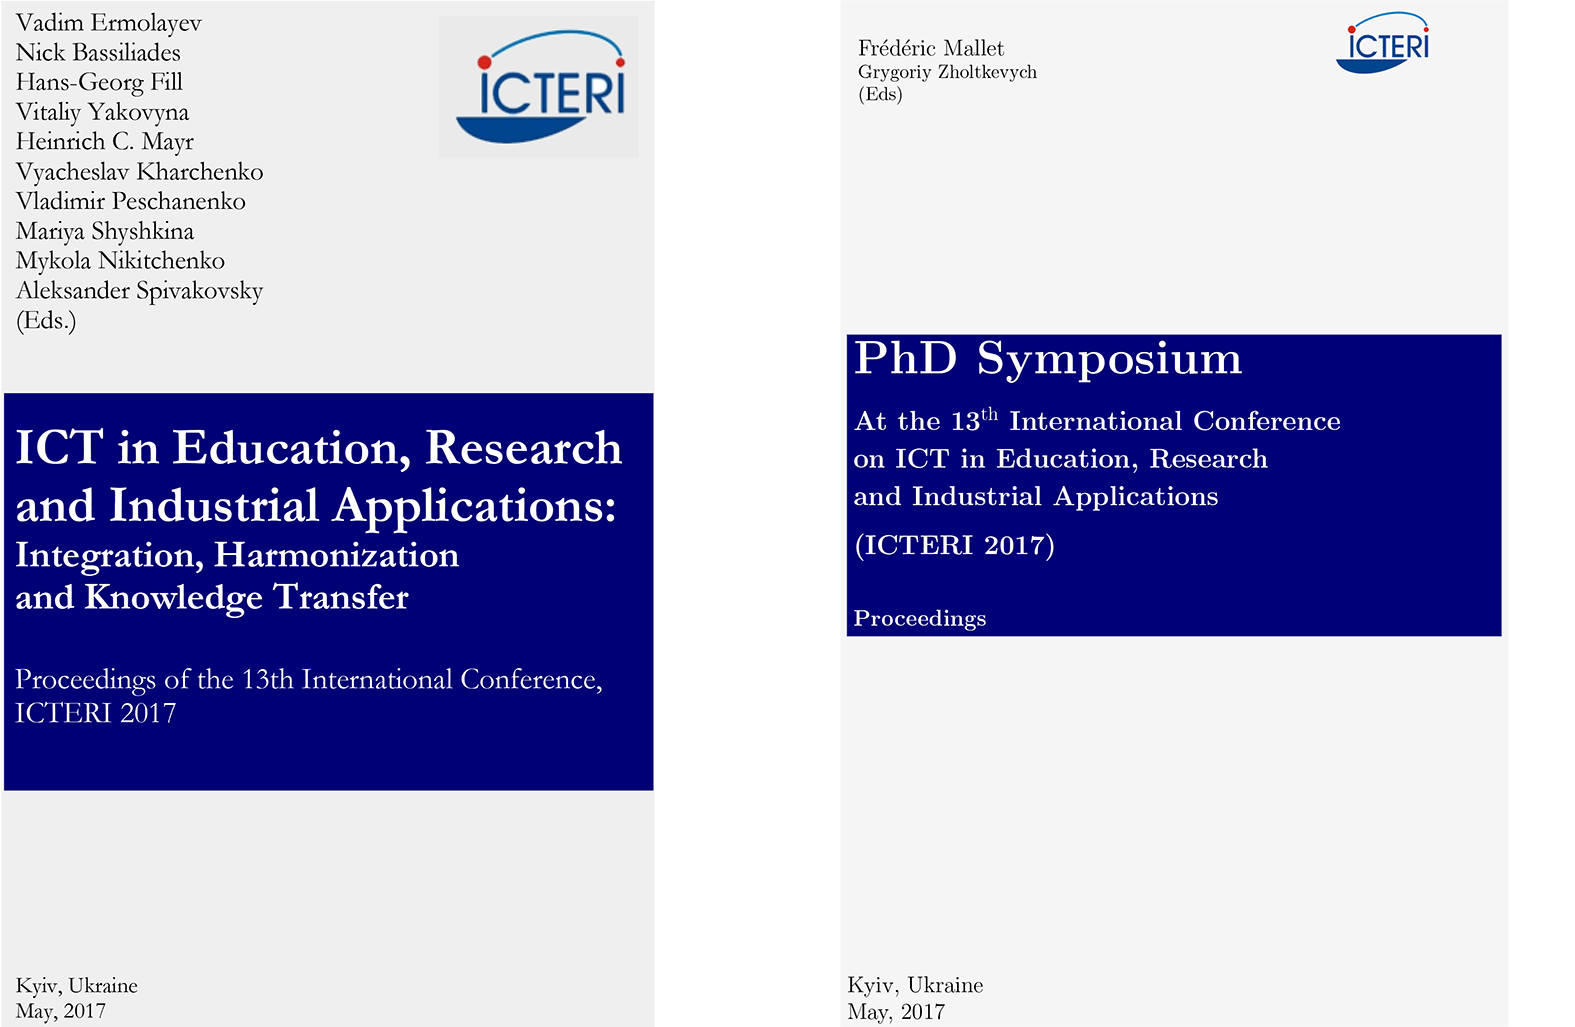 ICTERI-Proceedings-Cover